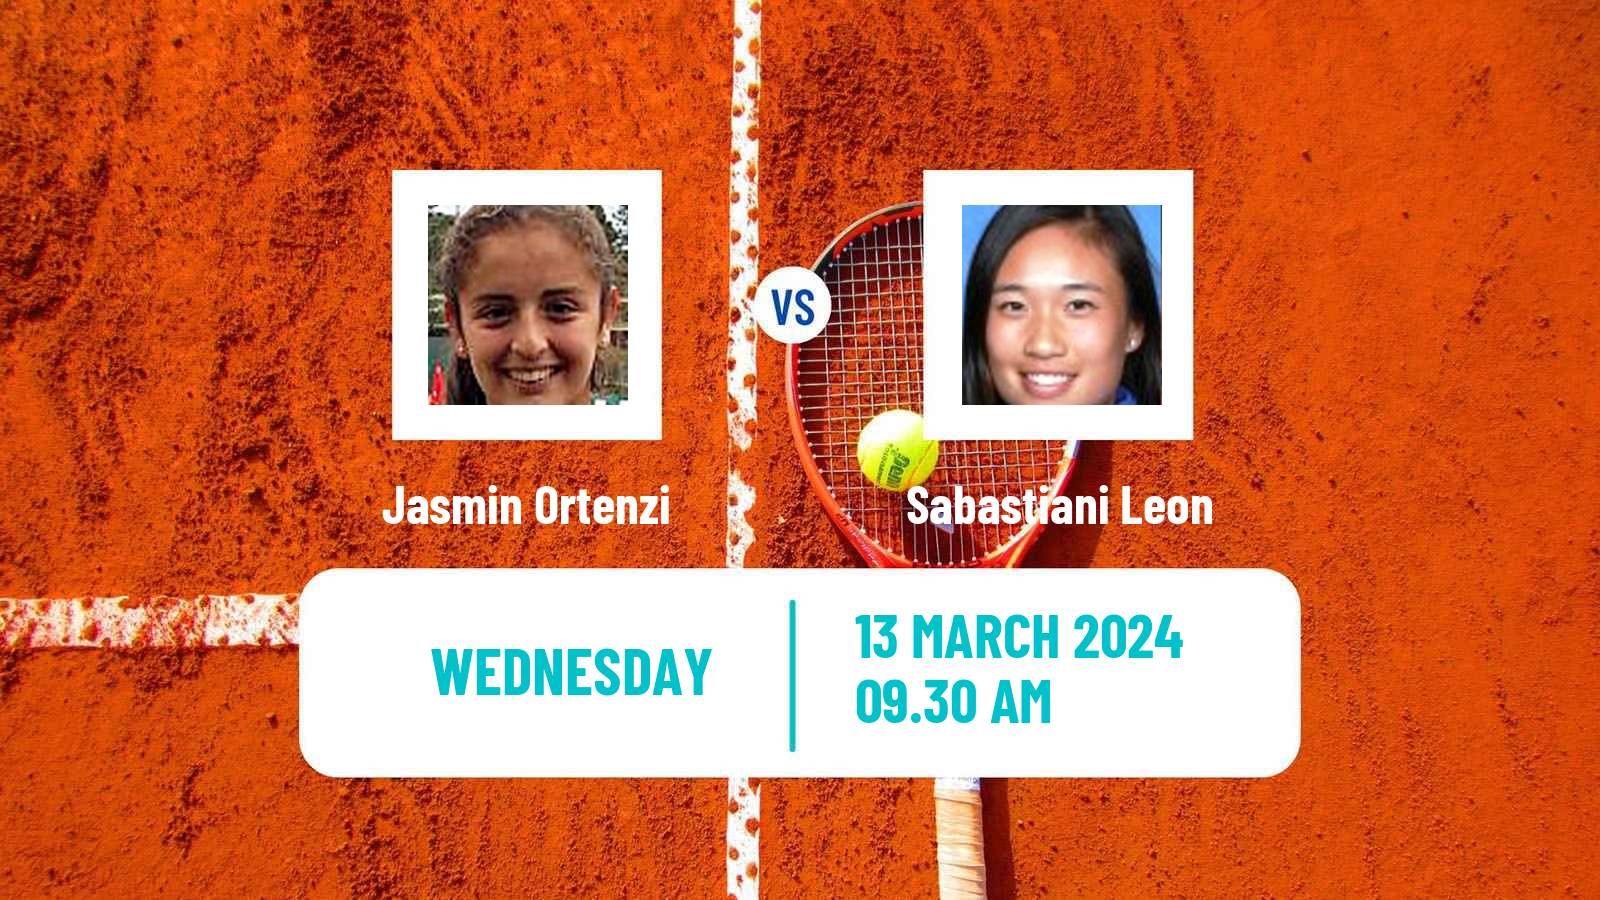 Tennis ITF W15 Sao Joao Da Boa Vista Women Jasmin Ortenzi - Sabastiani Leon